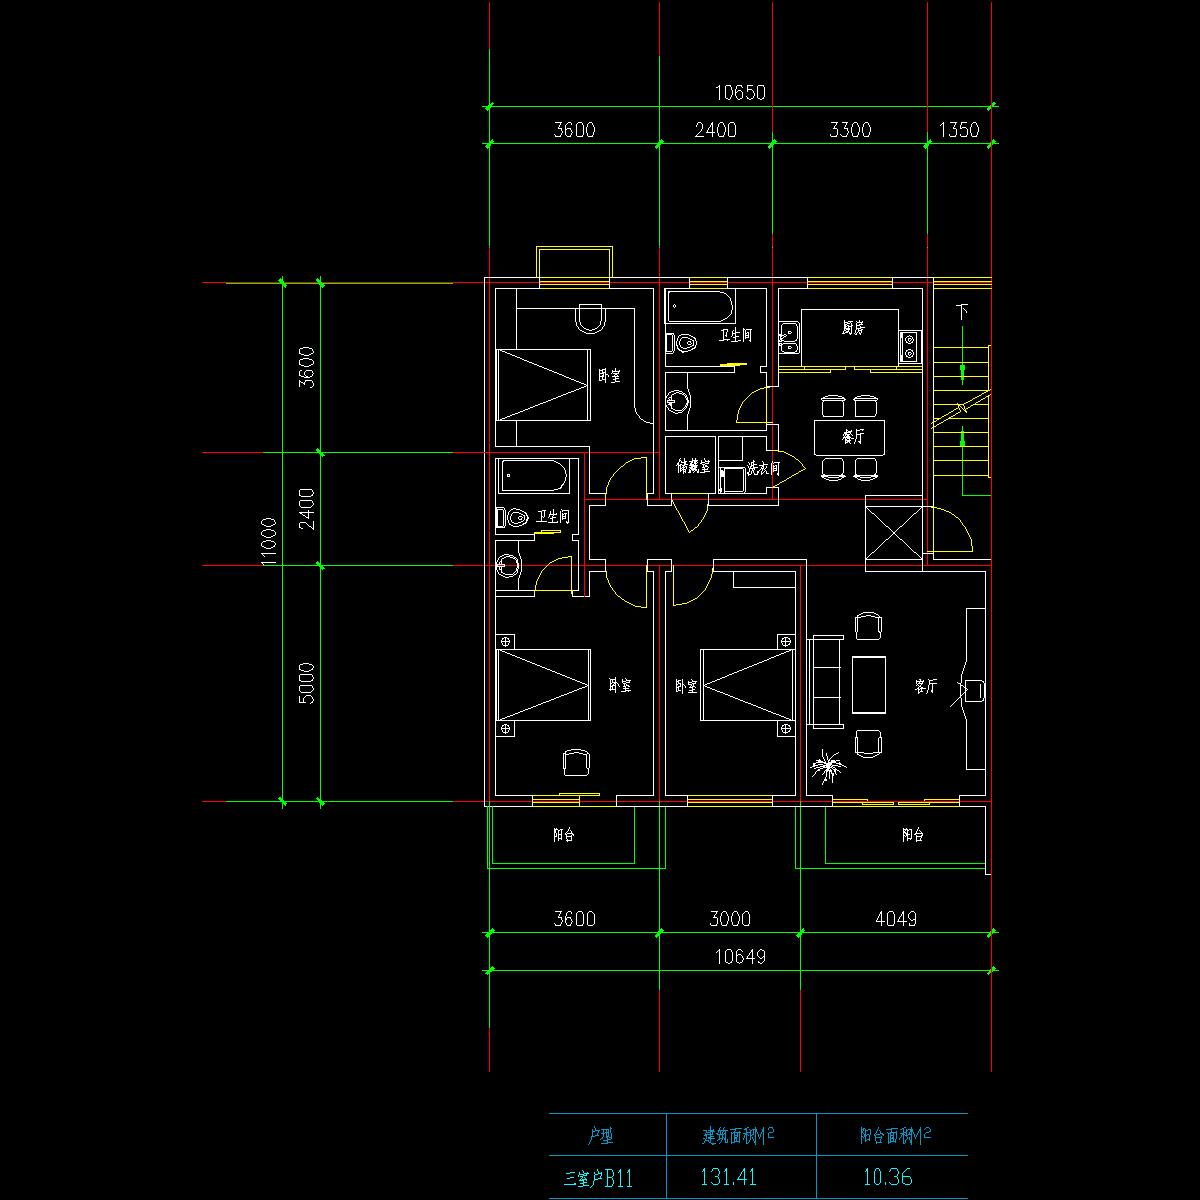 板式高层三室一厅单户户型CAD图纸(131.41)